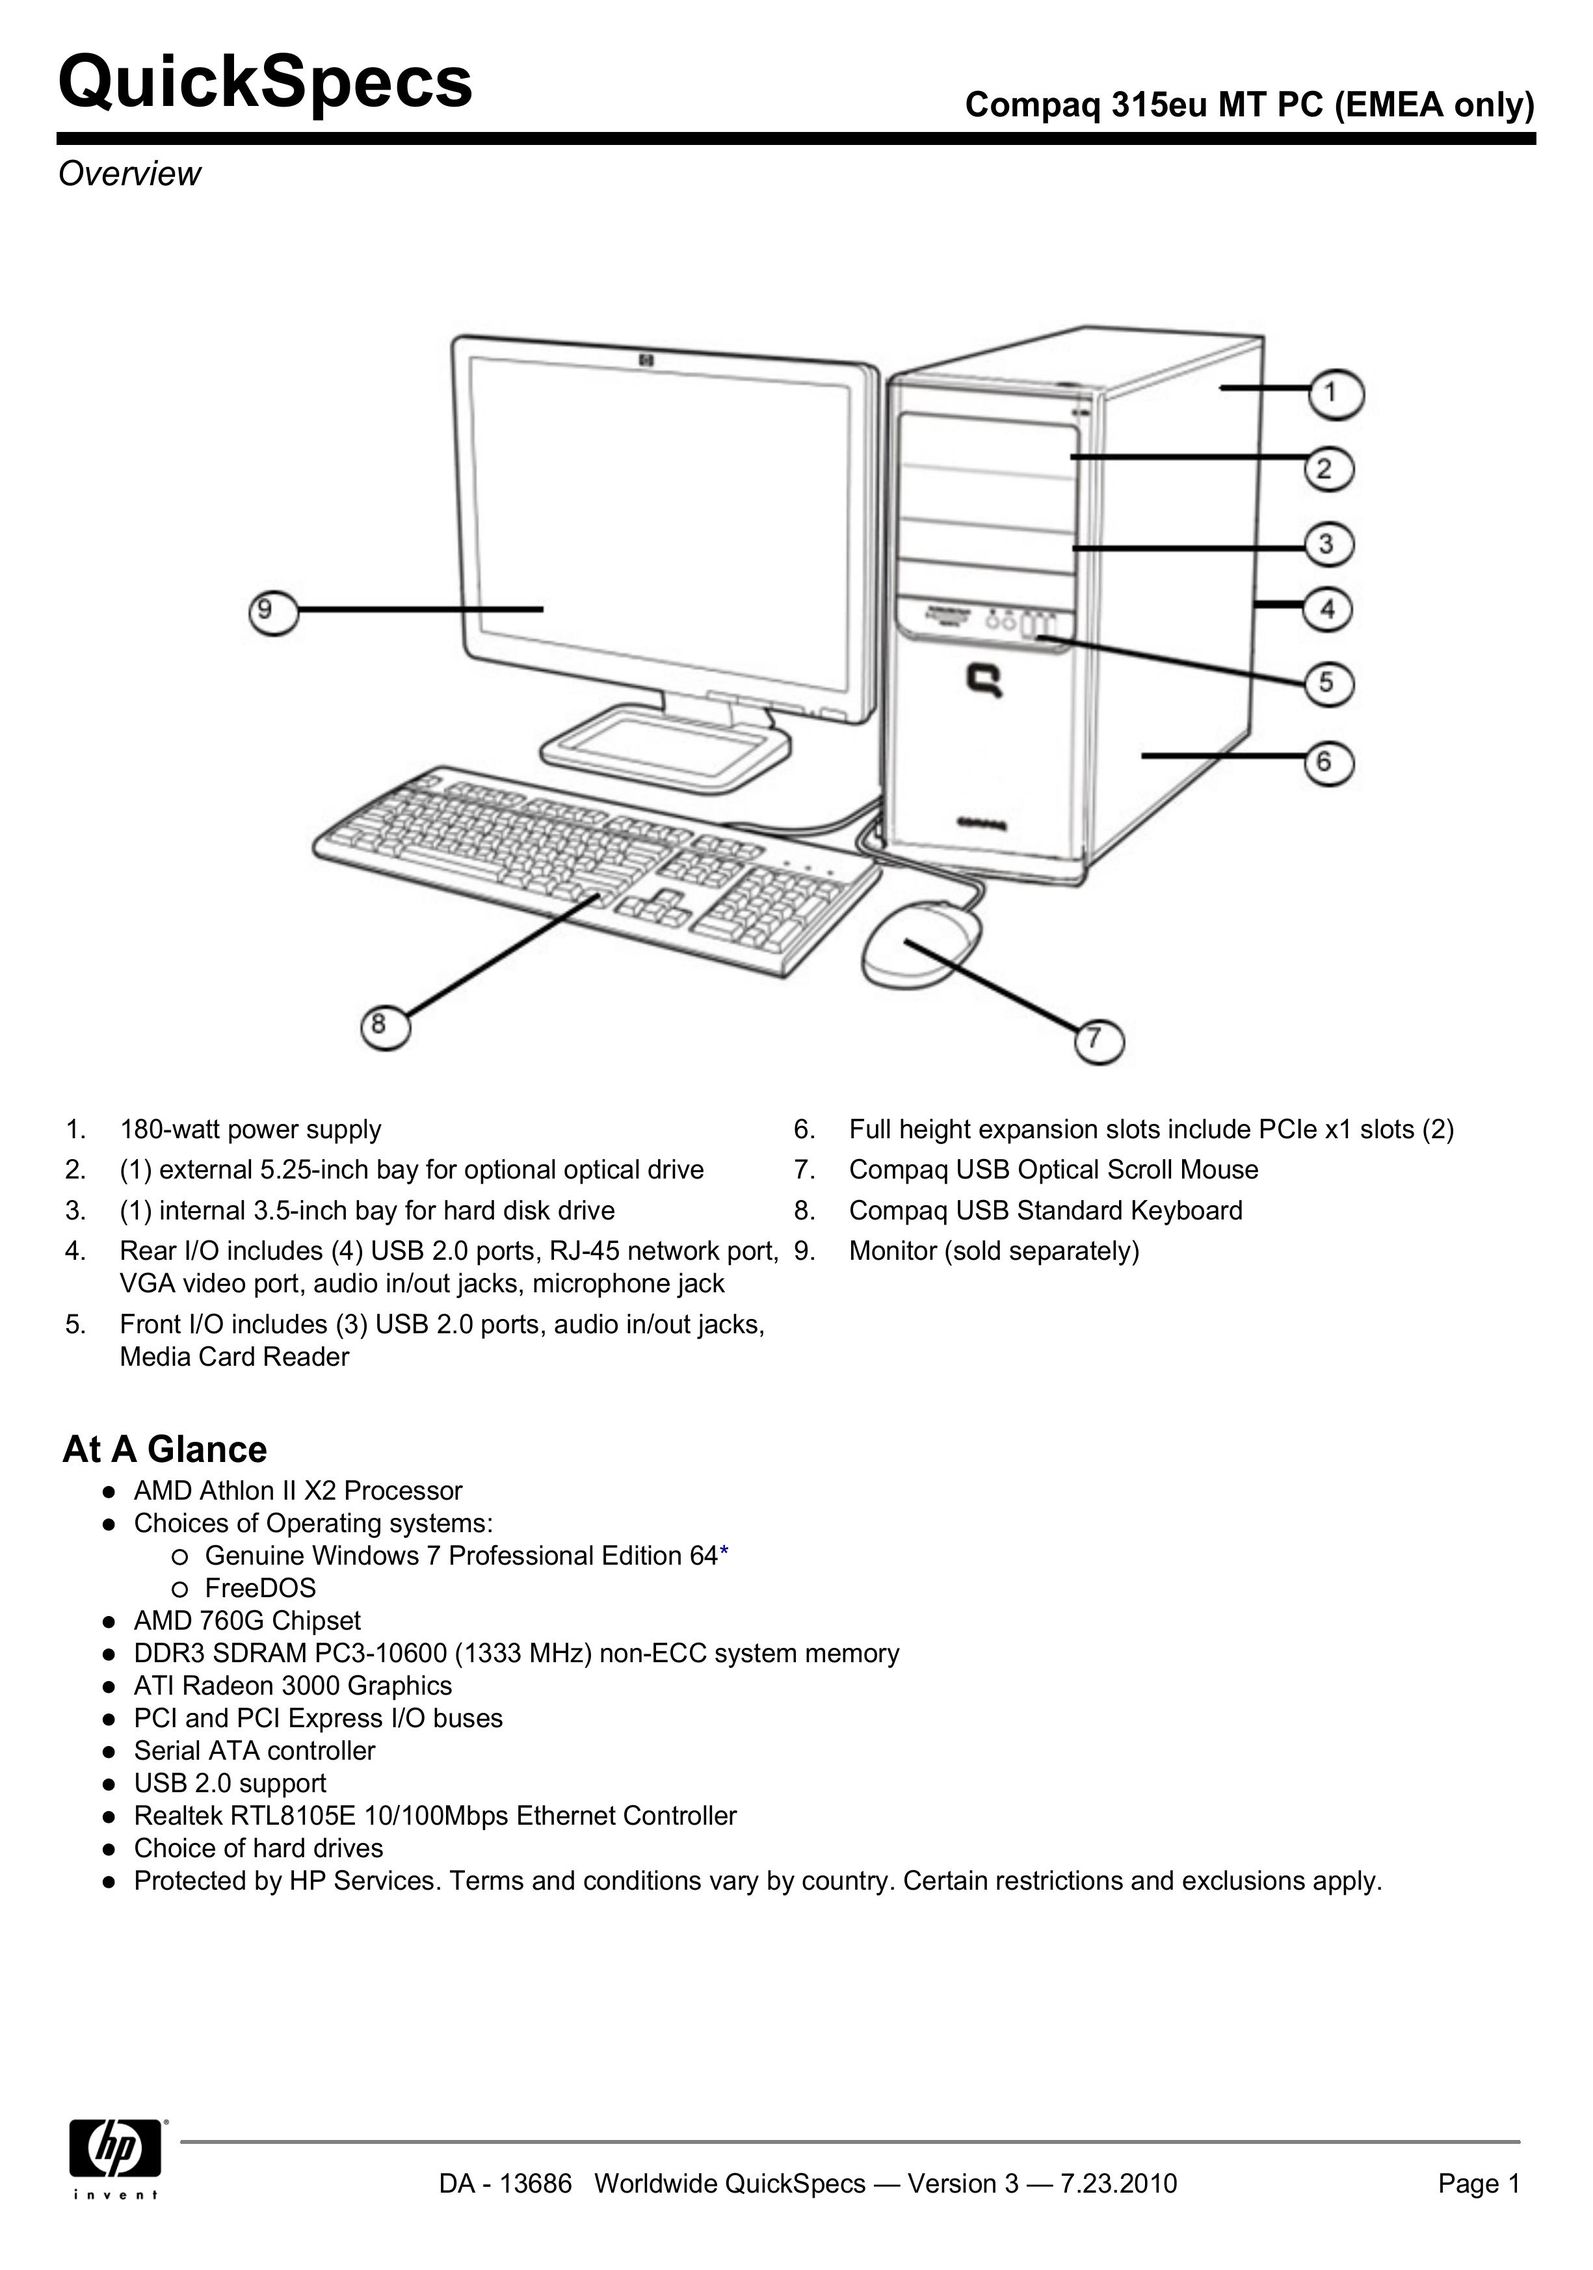 HP (Hewlett-Packard) 315EU Personal Computer User Manual